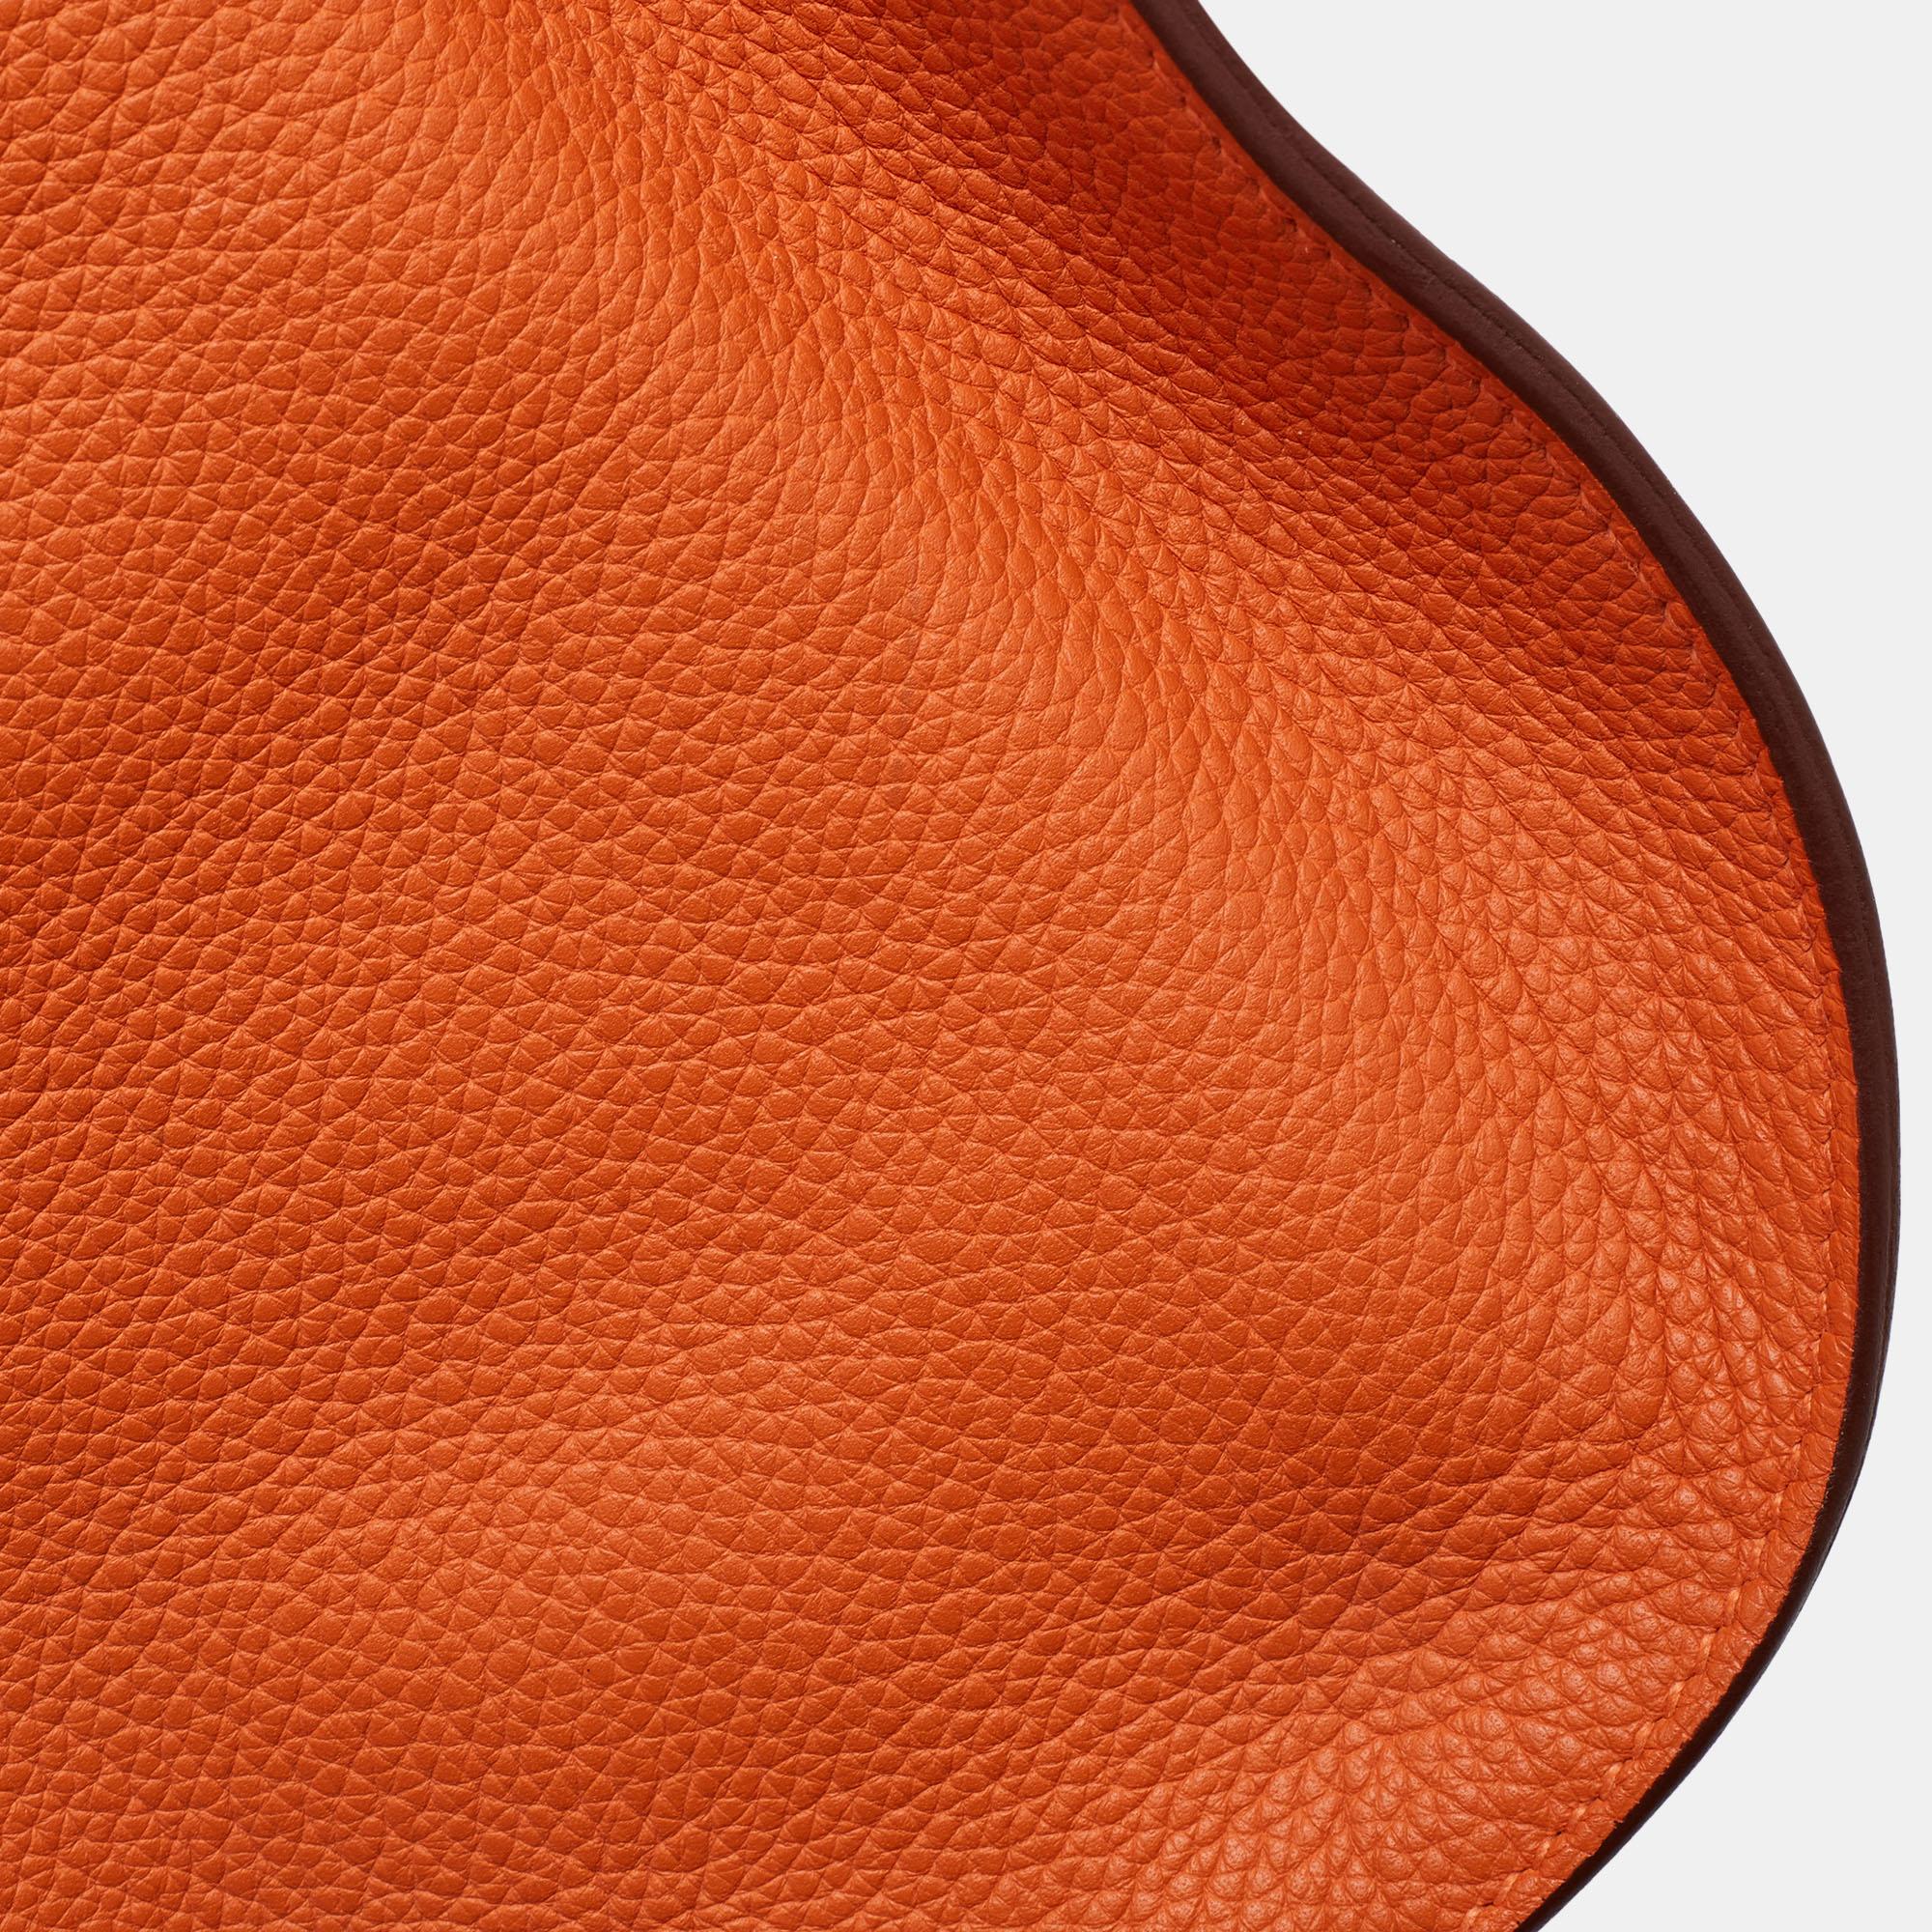 Hermès Orange Togo Leather Palladium Finish Jypsiere 37 Bag For Sale 9